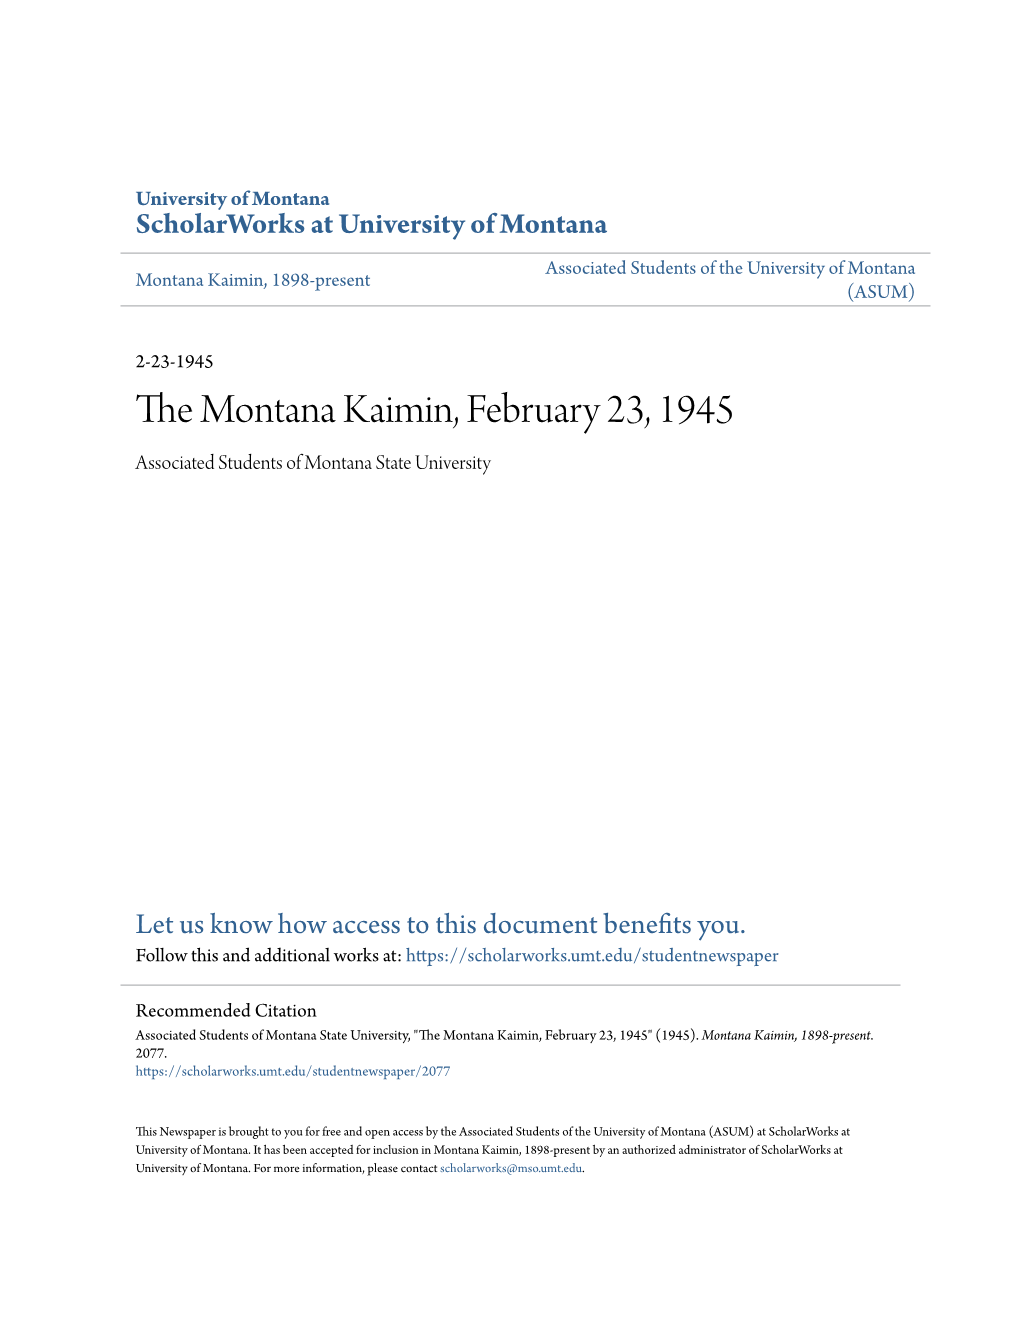 The Montana Kaimin, February 23, 1945